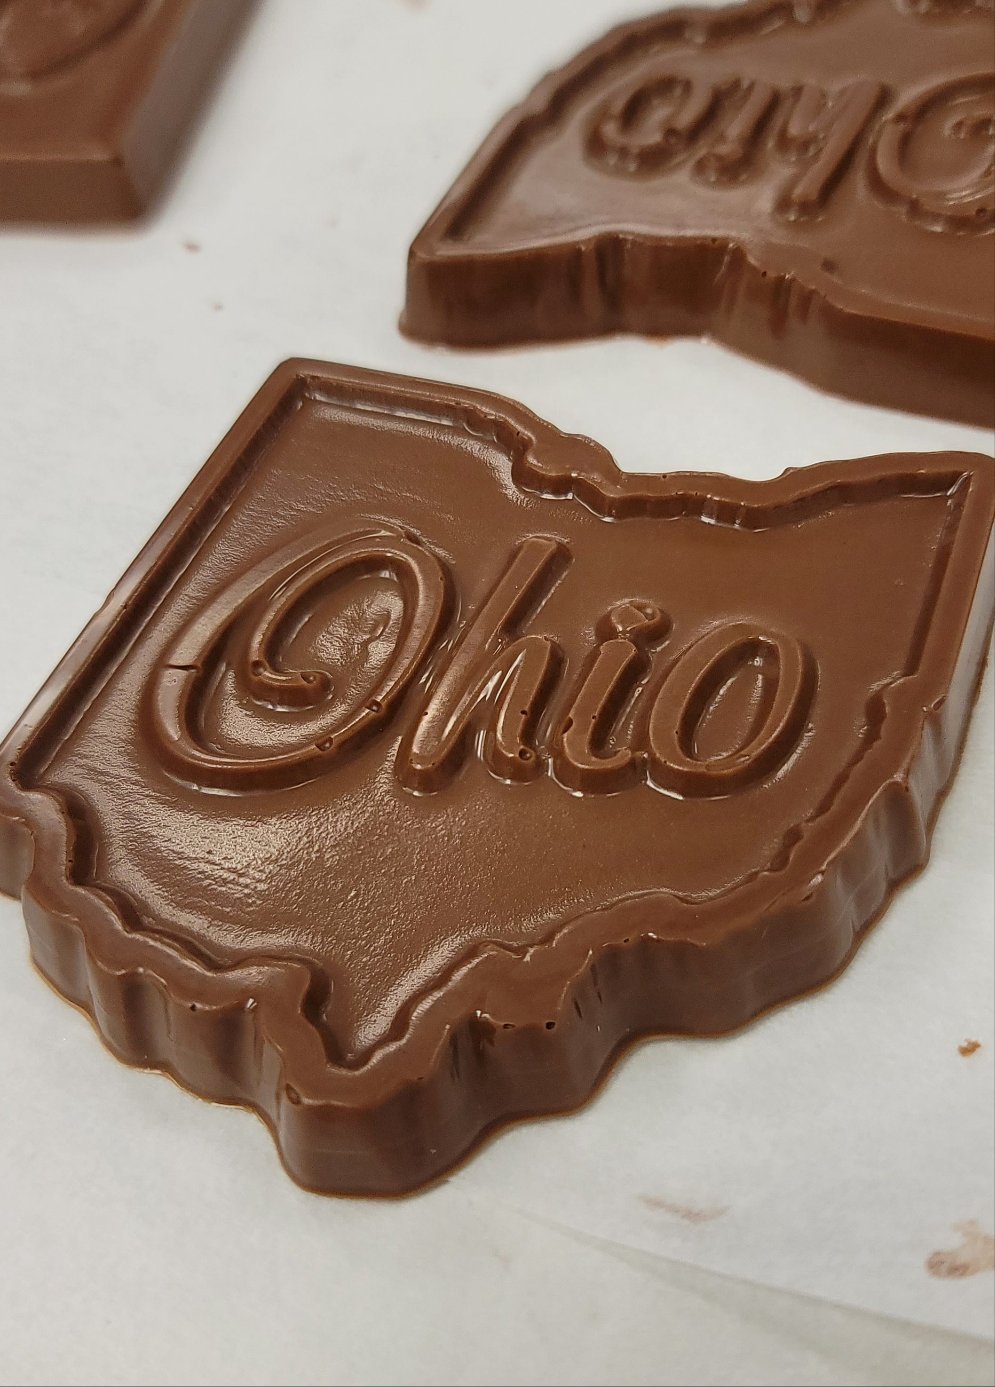 Milk Ohio